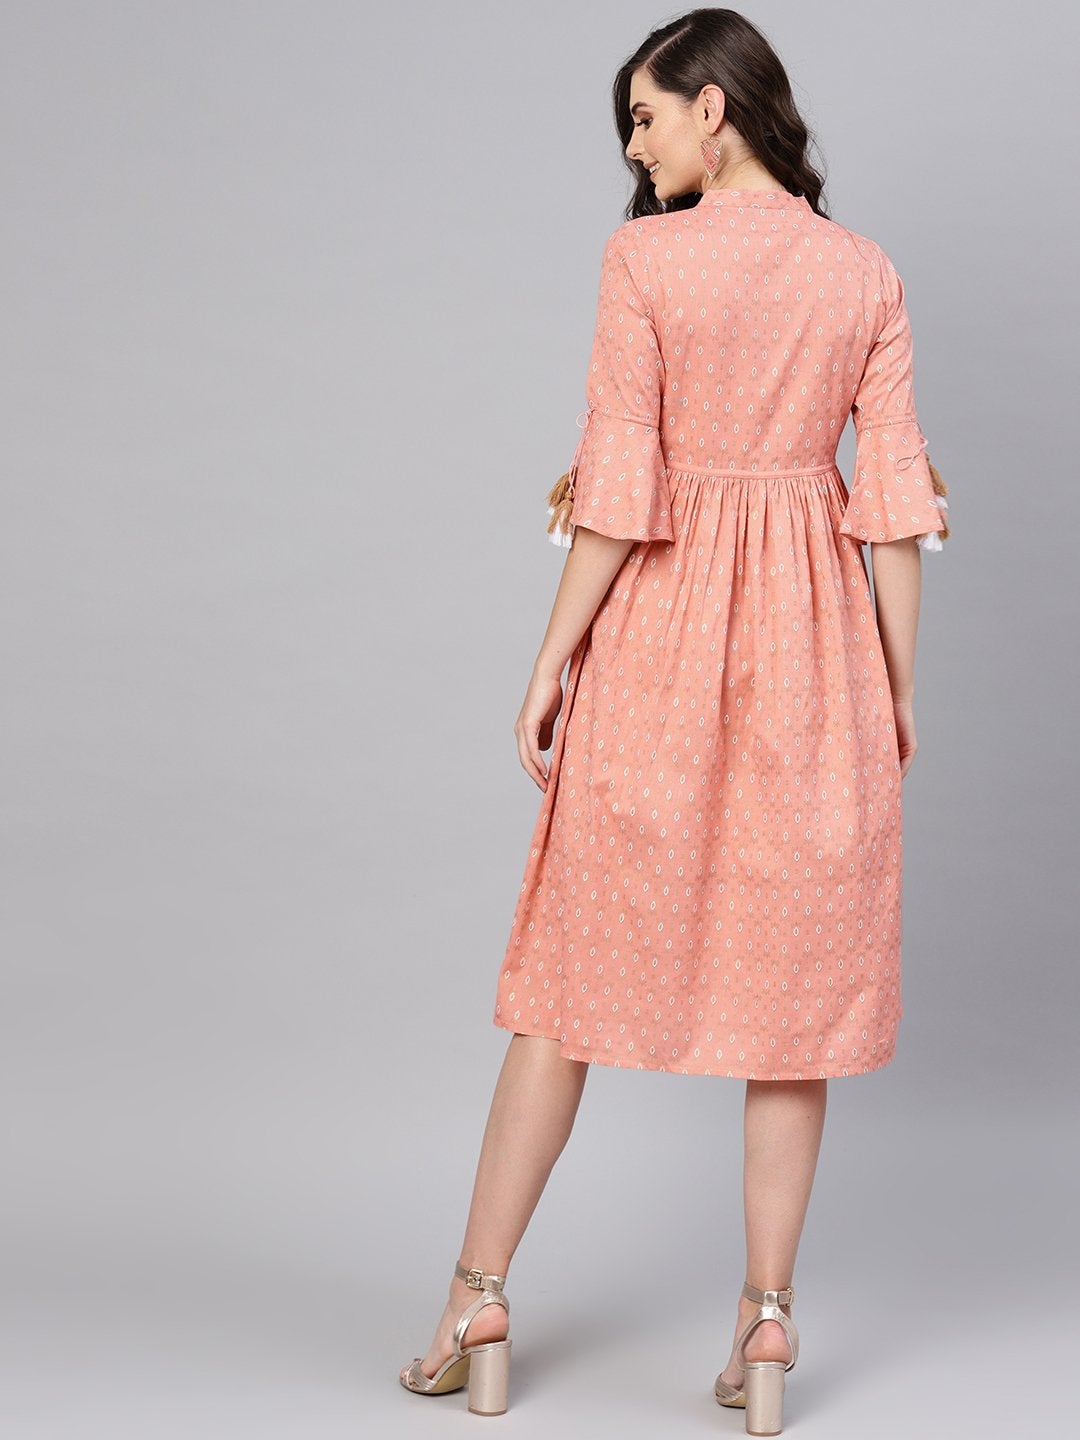 Women's Peach Foil Drawstring Dress - SASSAFRAS